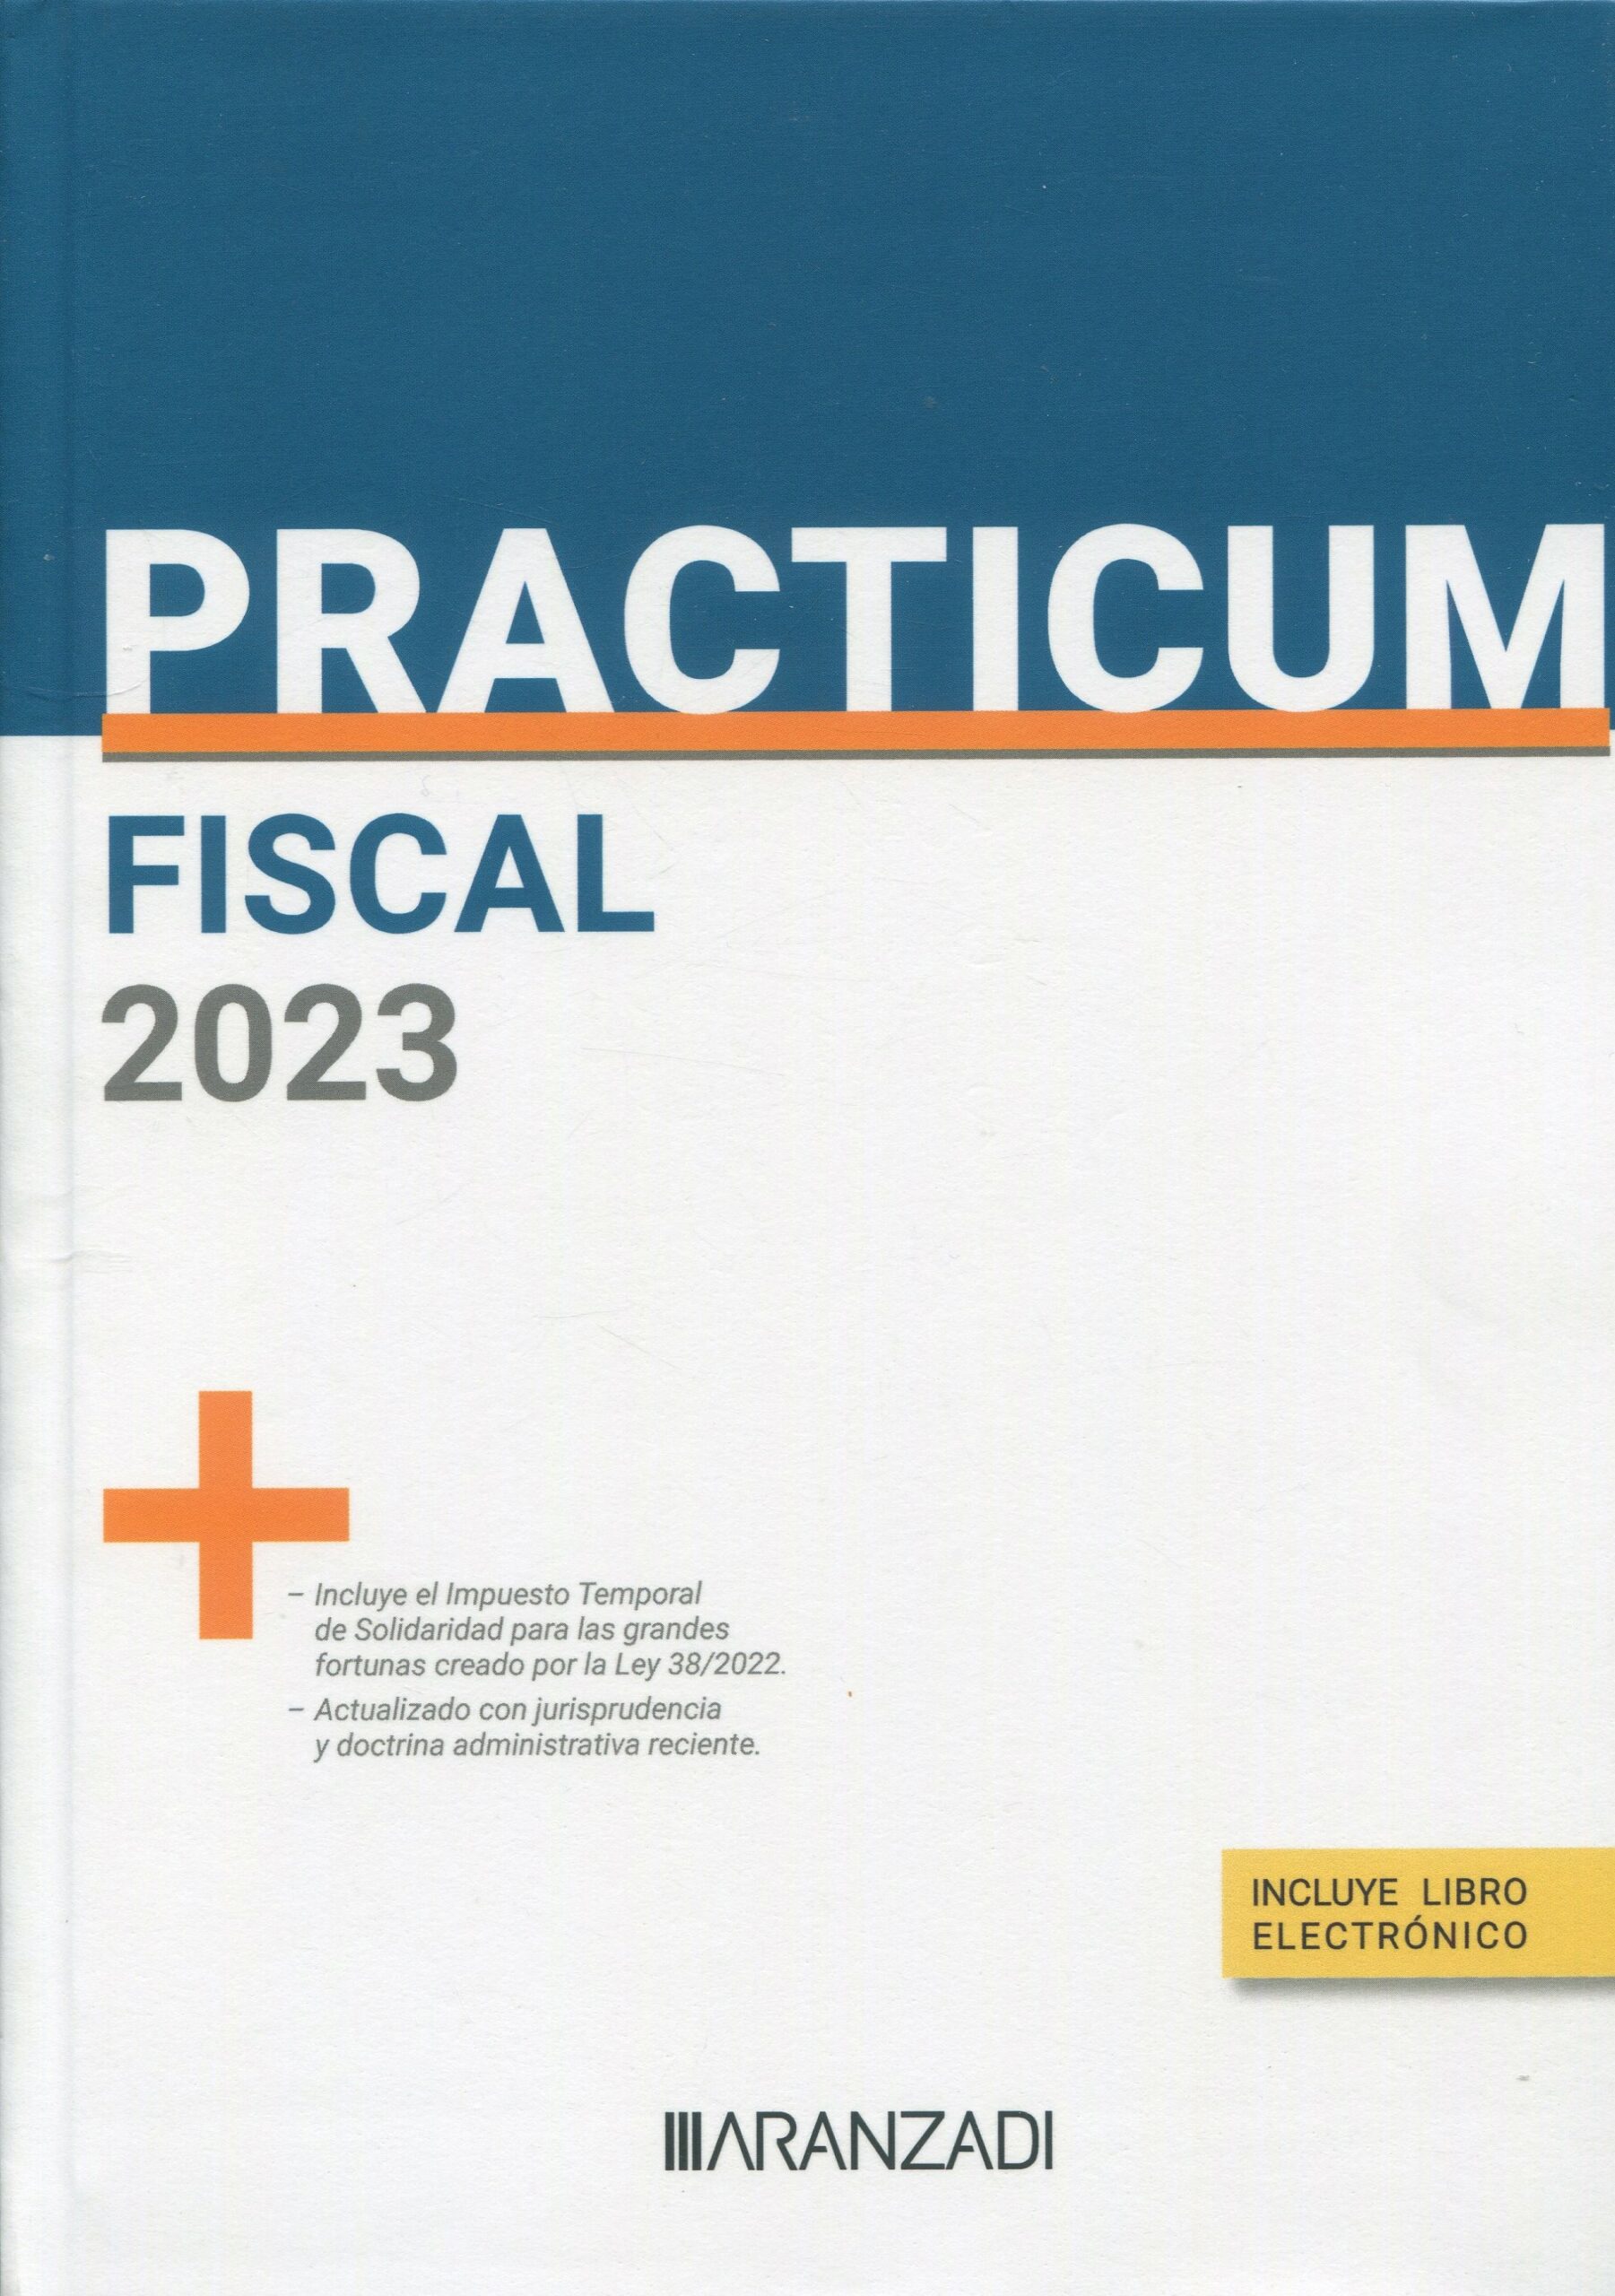 PRACTICUM-Fiscal 2023